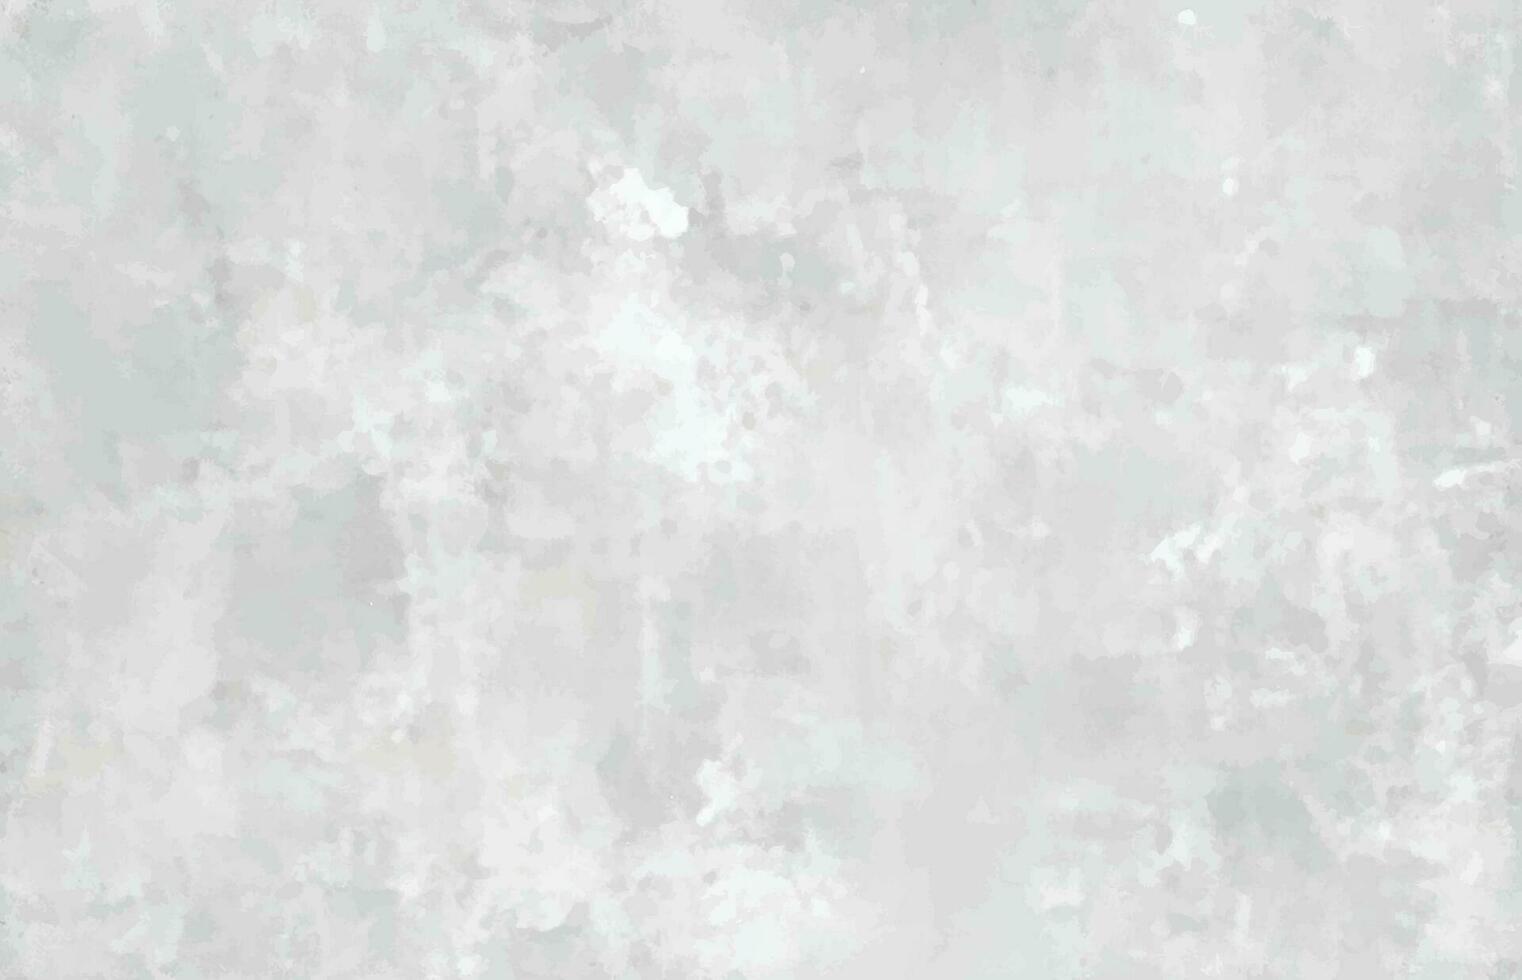 einfarbig Textur mit Weiß und grau Farbe. Grunge alt Mauer Textur, Beton Zement Hintergrund. künstlerisch Baumwolle Grunge grau Hintergrund. vektor